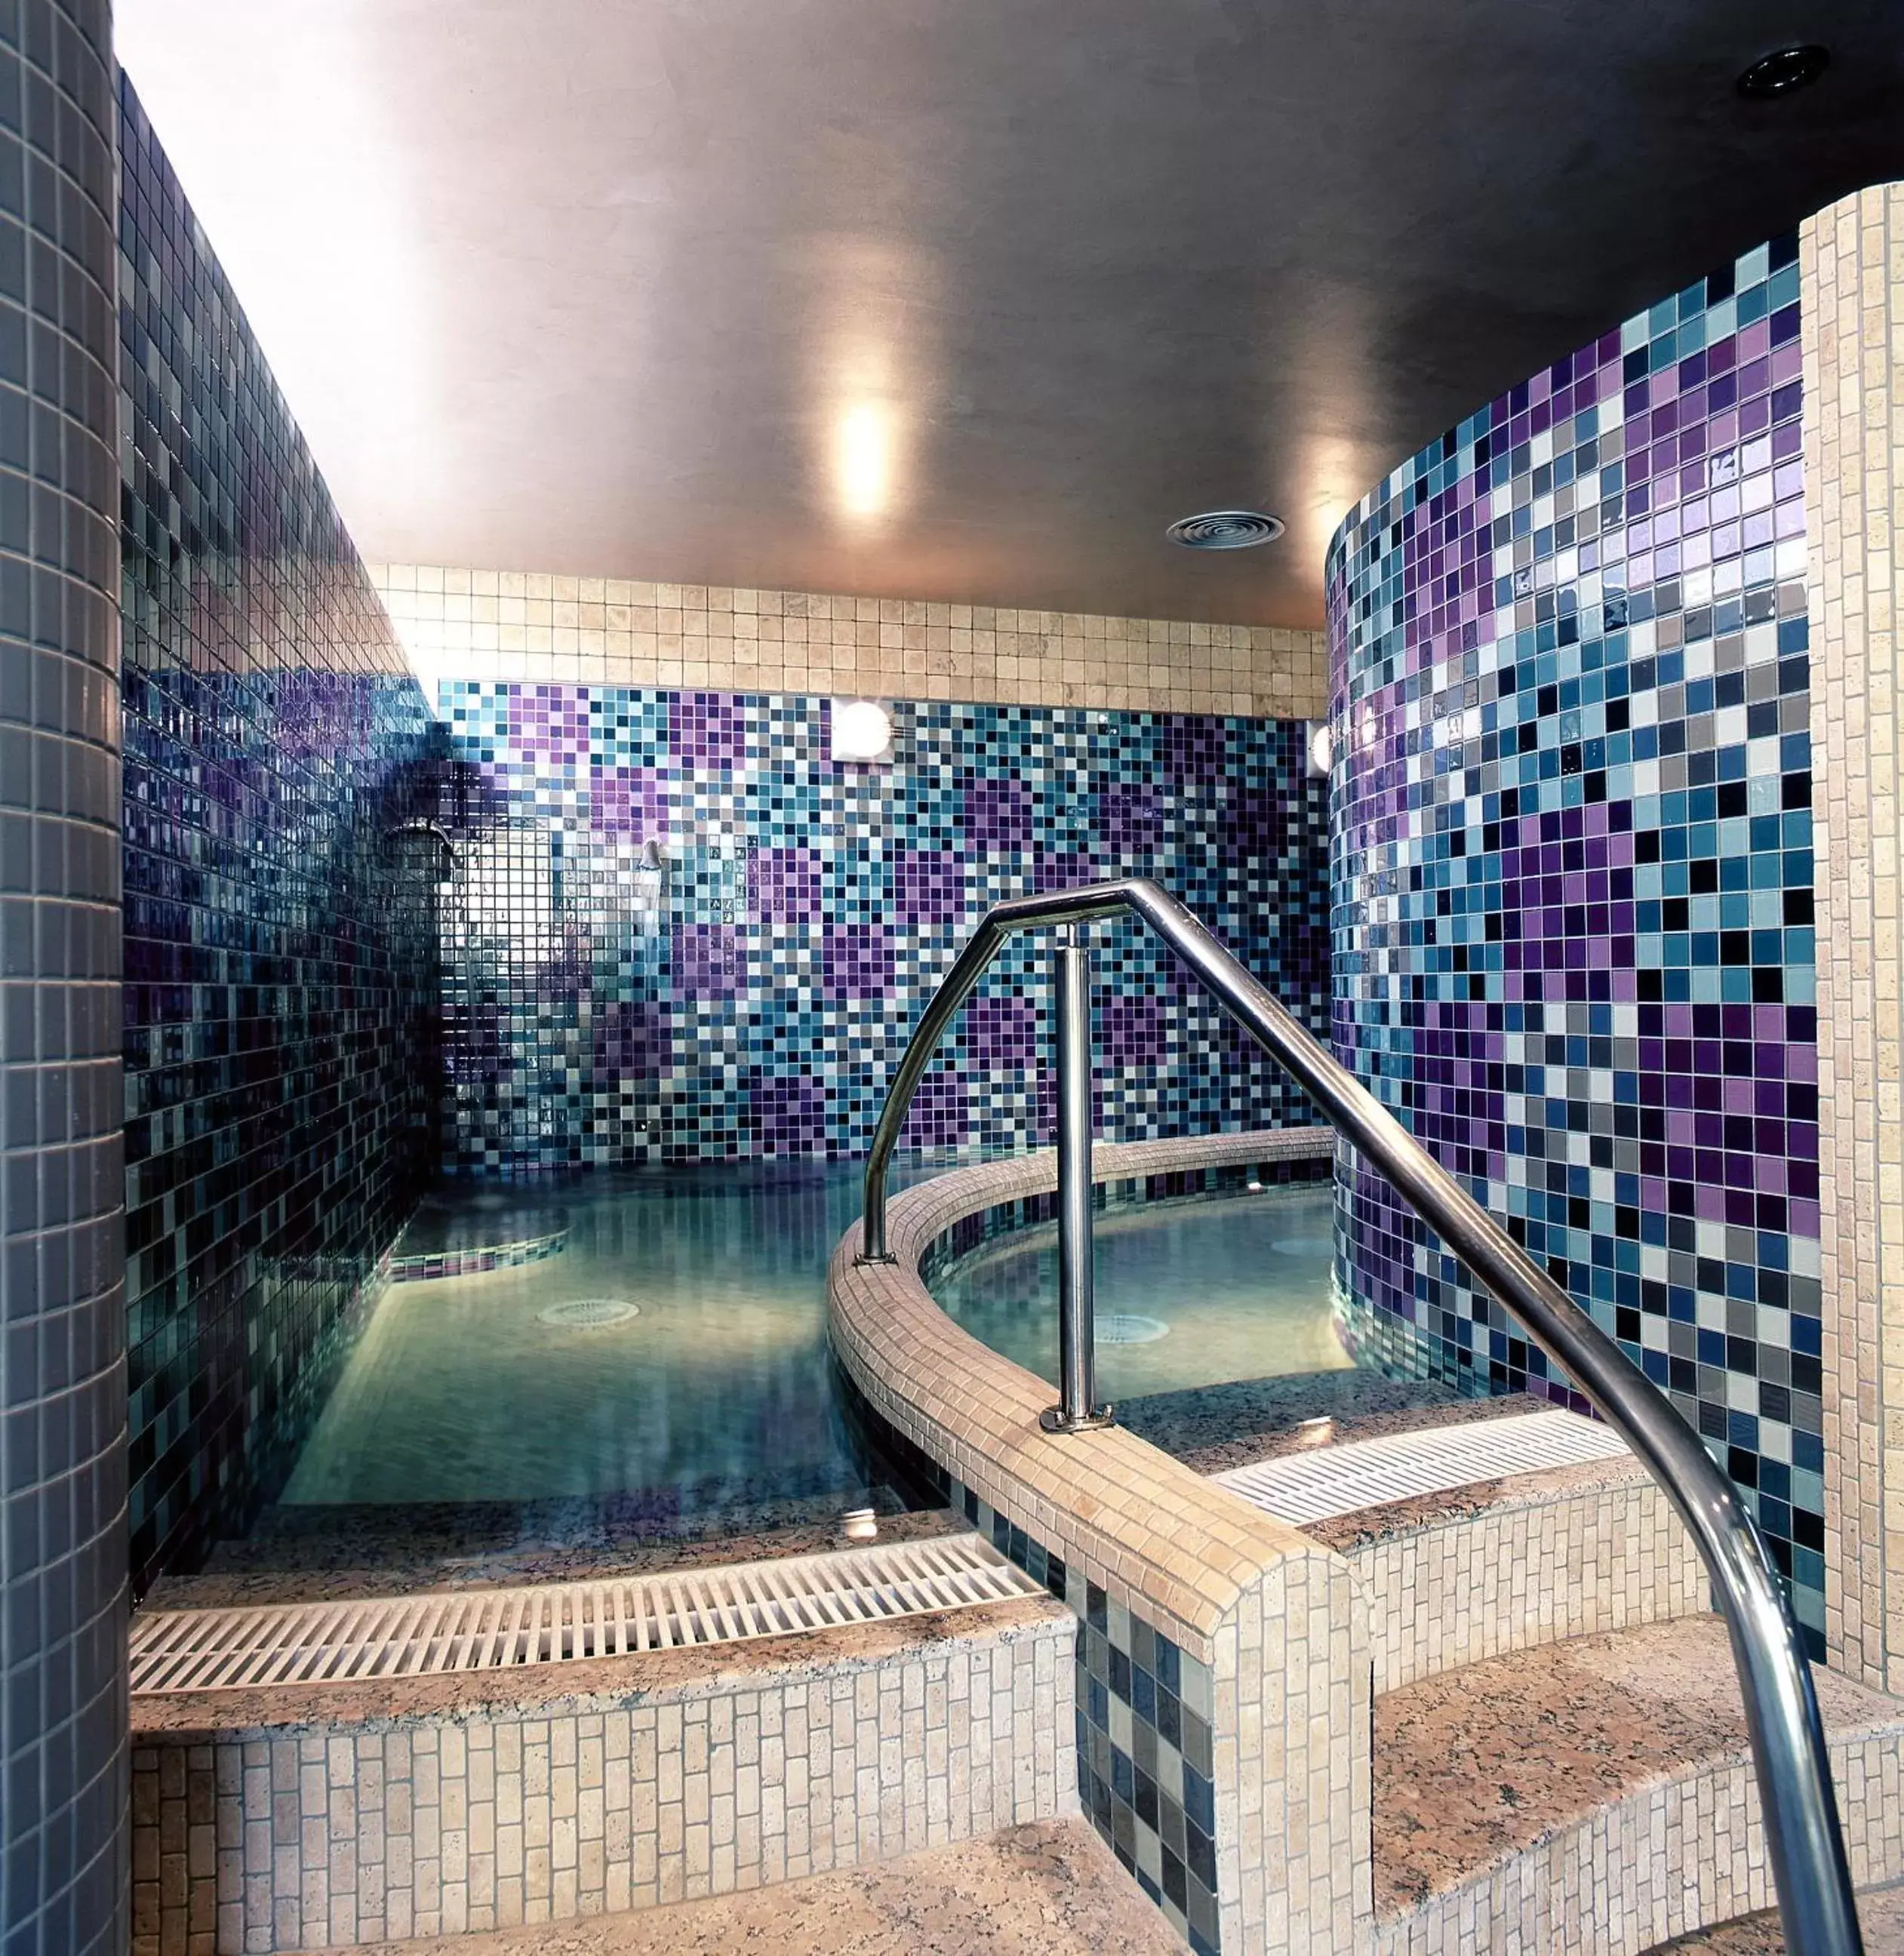 Other, Swimming Pool in Balneario de Archena - Hotel Levante